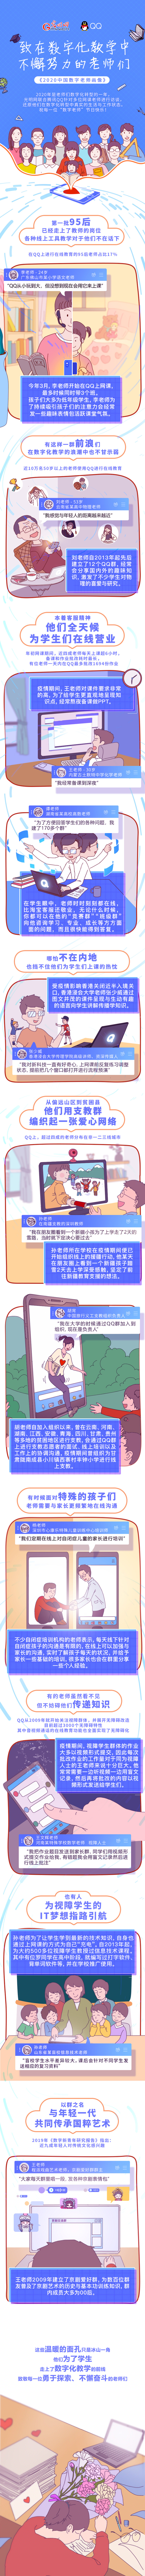 《2020中国数字老师画像》出炉 致敬在数字化教学中不懈努力的老师